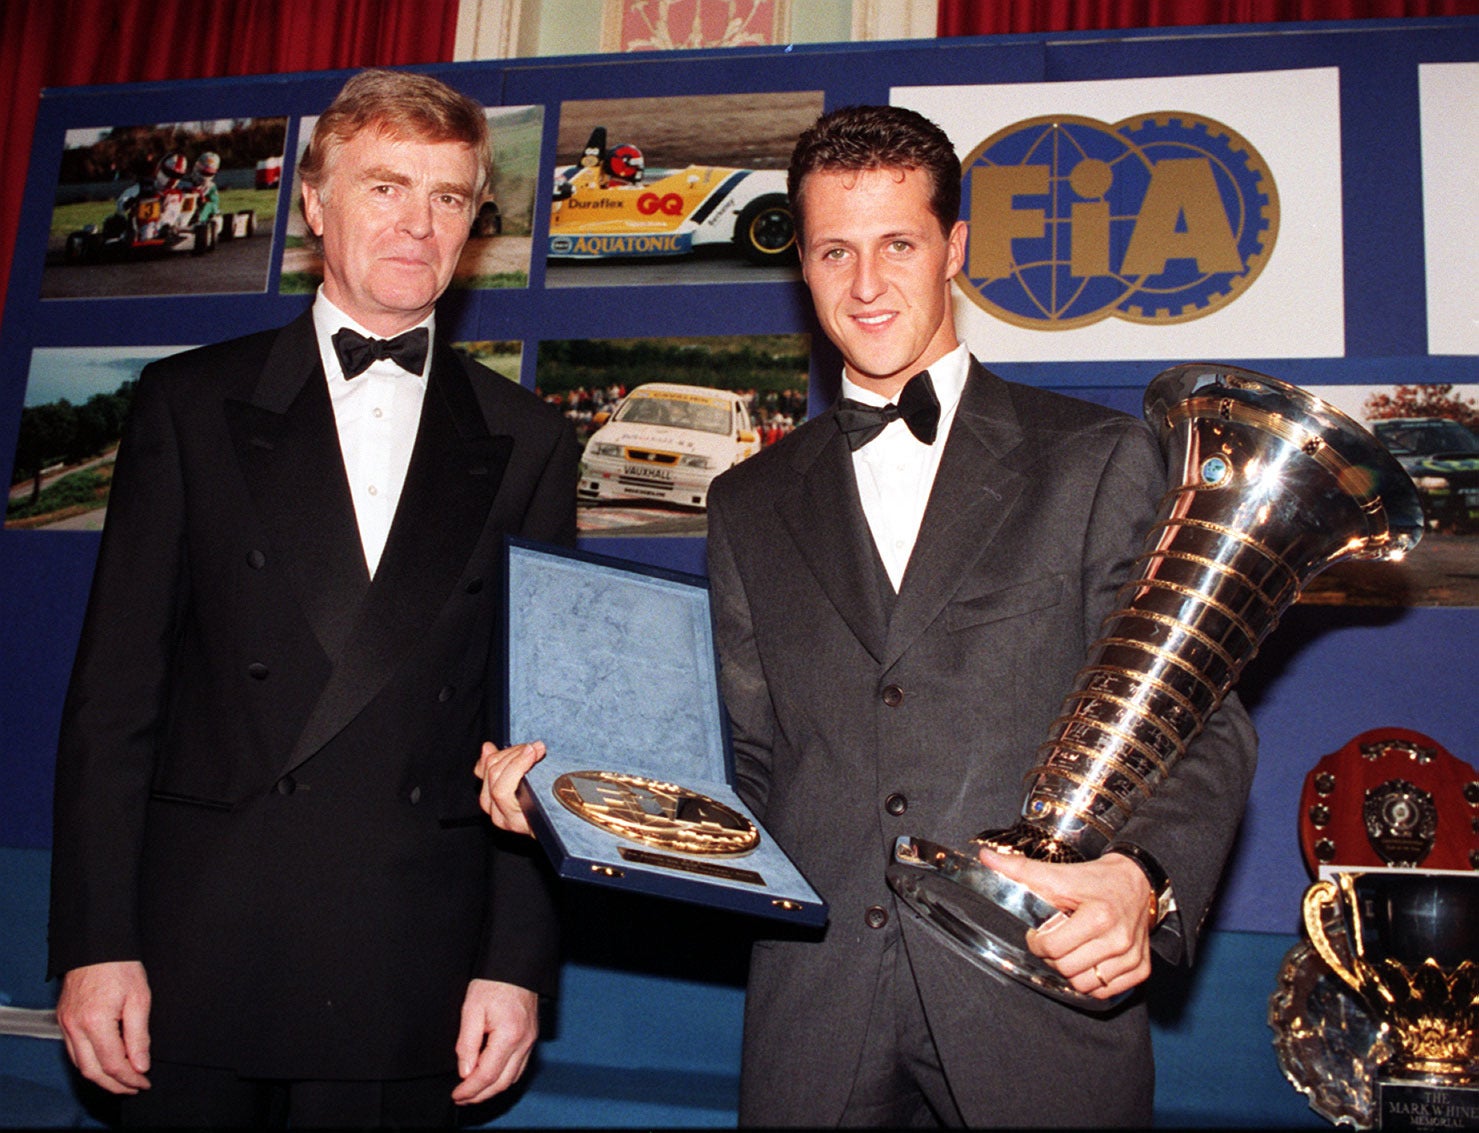 Michael Schumacher, de 27 años, recibe el premio del Campeonato de la Fórmula 1 de la FIA. Junto a él, el entonces presidente de dicho organismo, Max Mosley, en Londres